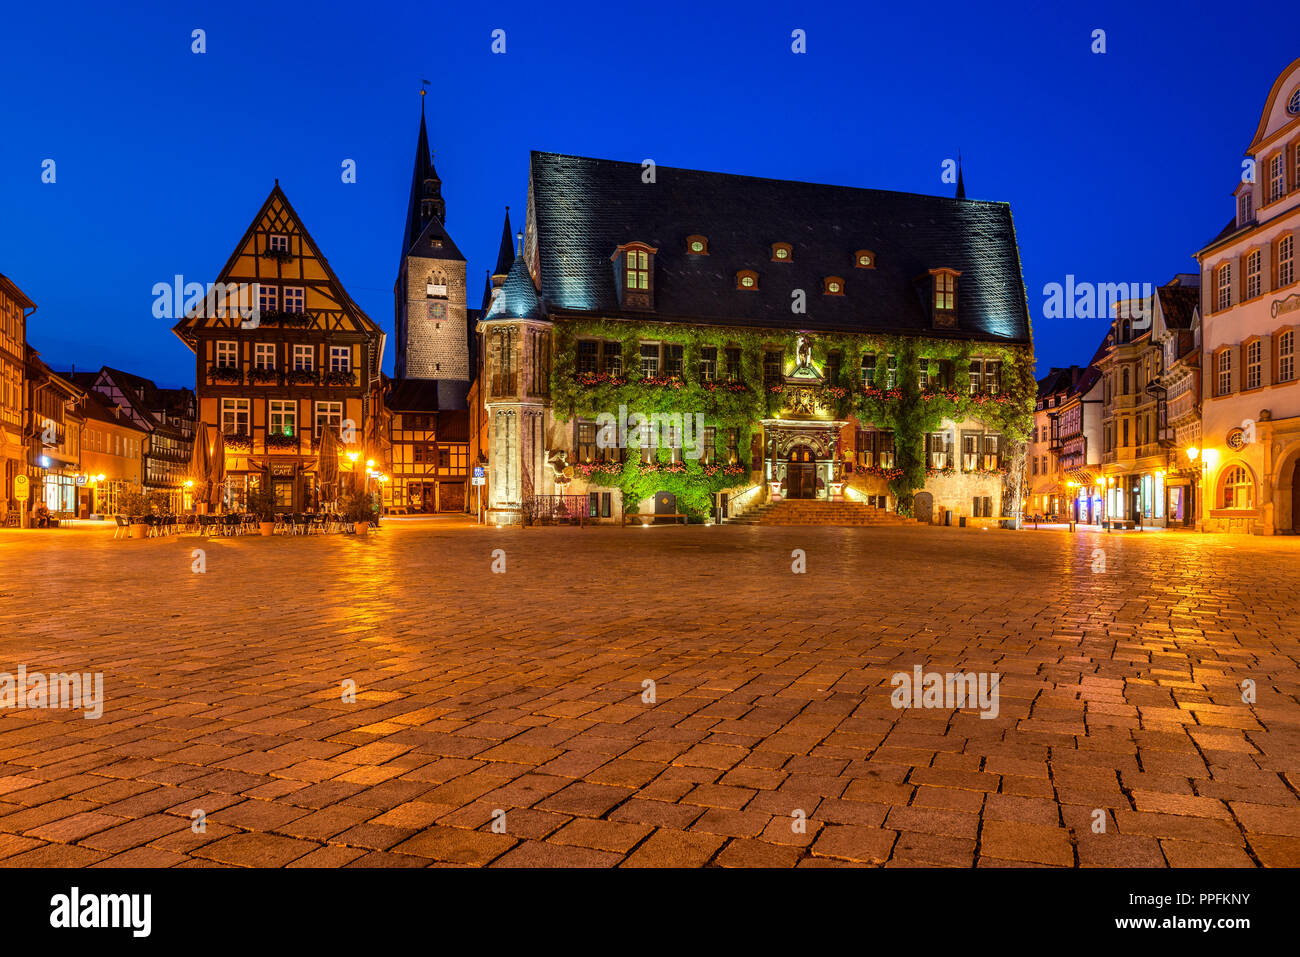 Markt mit Rathaus und Marktkirche, Nachtaufnahme, Weltkulturerbe der UNESCO, Quedlinburg, Harz, Sachsen-Anhalt, Deutschland Stockfoto